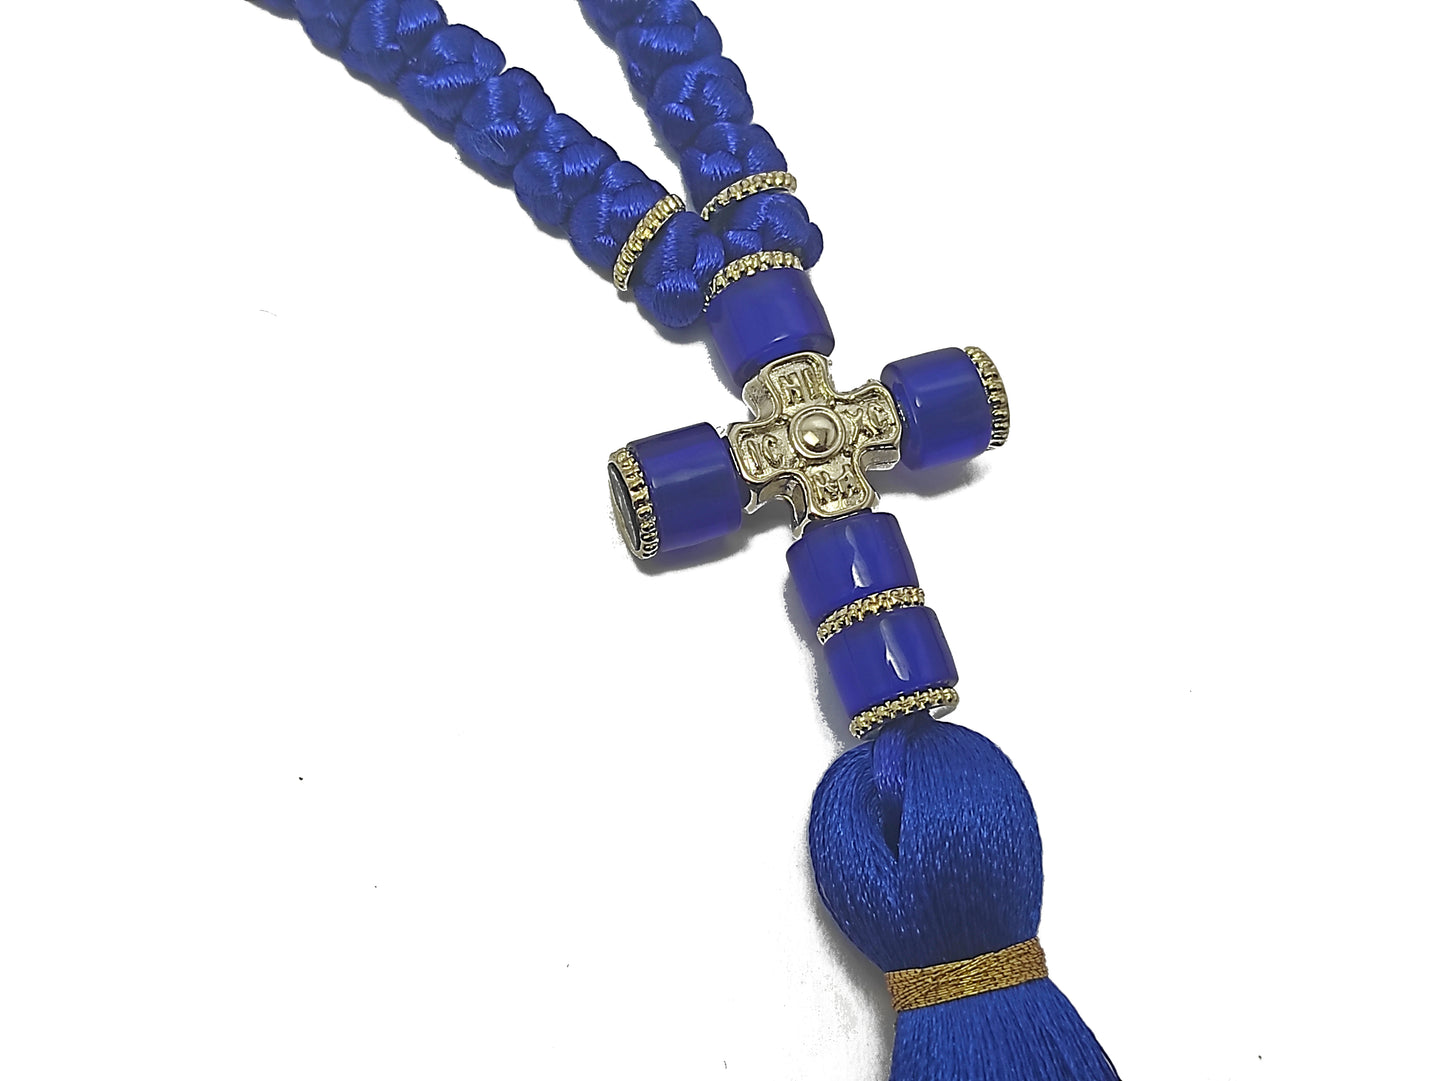 Αγιορείτικο 100αρι Κομποσχοίνι Προσευχής σε Μπλε Χρώμα  [Δ12]